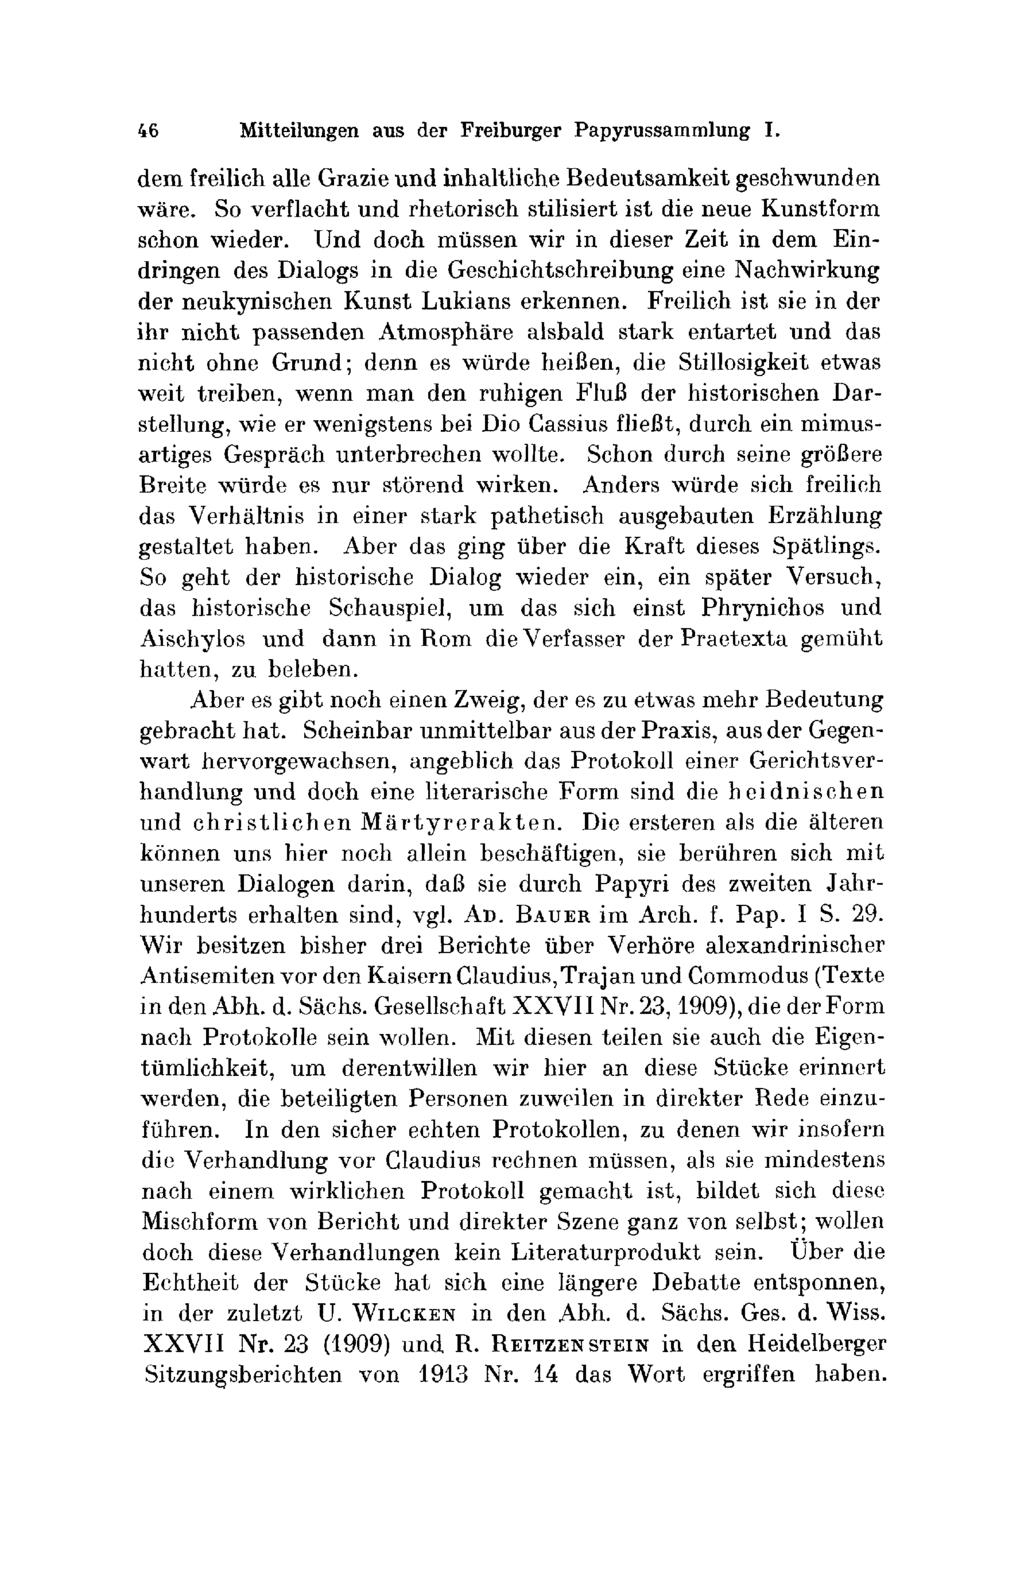 46 Mitteilungen aus der Freiburger Ραρyrussαmmlung I. dem freilich alle GrazΊe und inhaltliche Βedeutsamkeit geschwunden wäre.